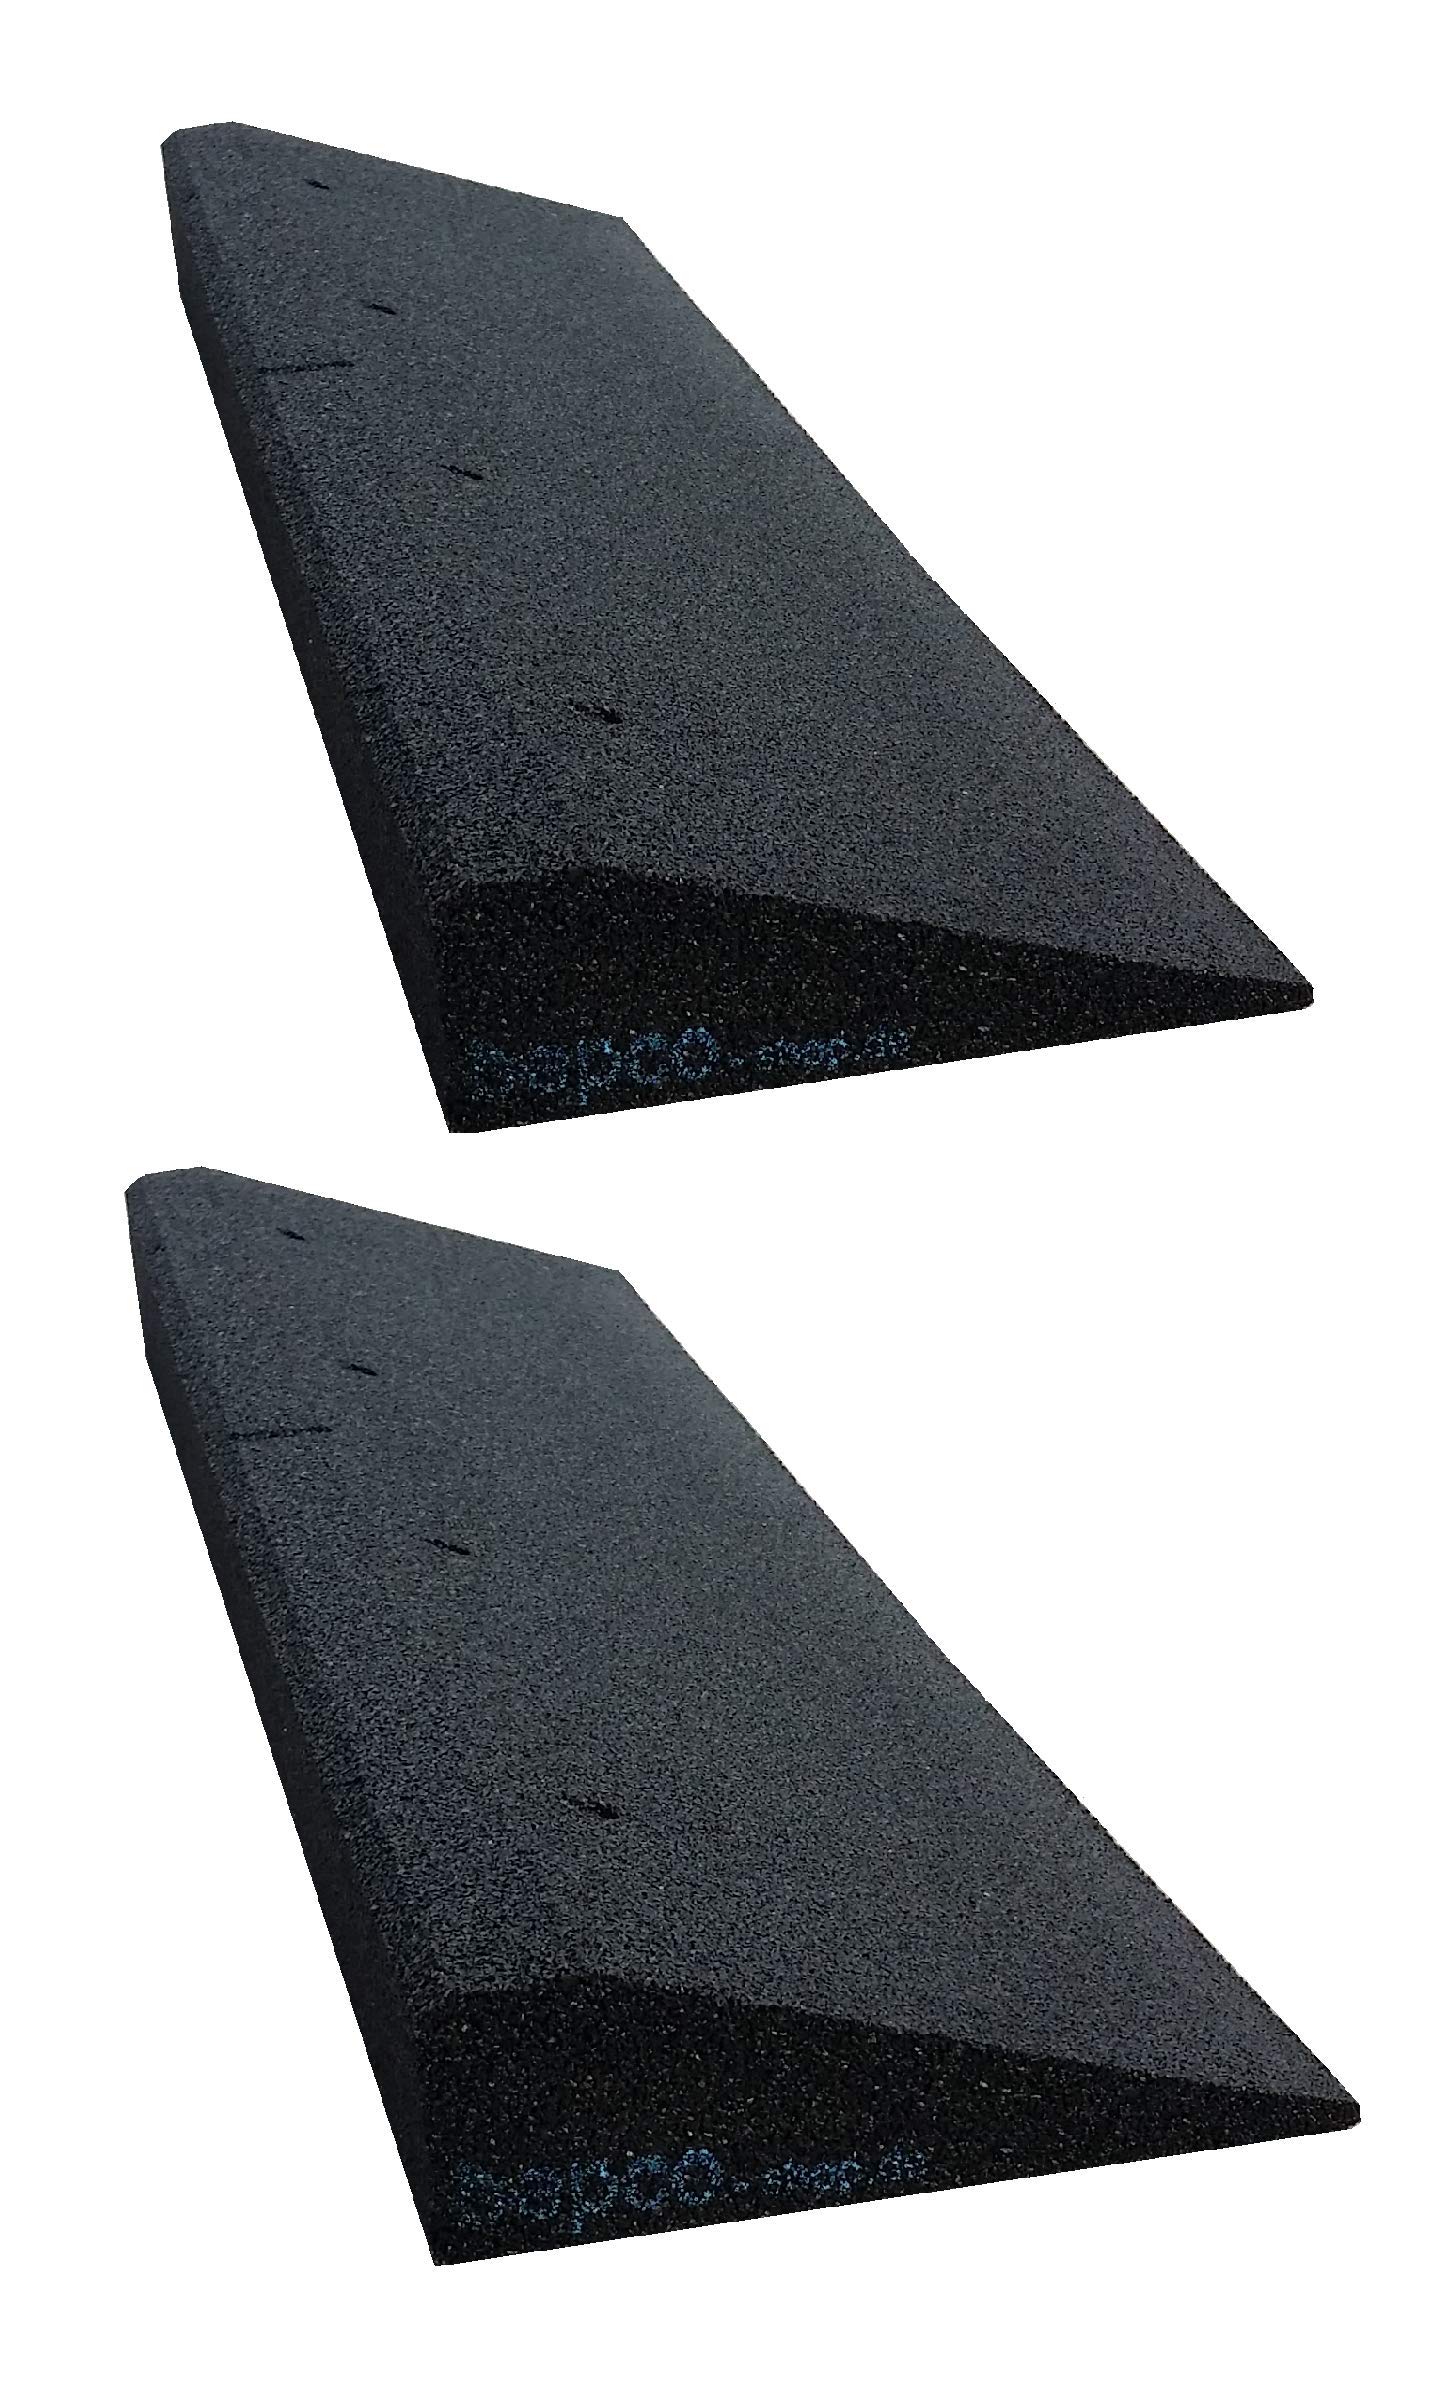 Bordsteinkanten-Rampe 2er Set (2 Stück) LxBxH: 100 x 25 x 6 cm aus Gummi (schwarz) Auffahrrampe,Türschwellenrampe, mit eingelagerten Unterlegscheiben zur Befestigung